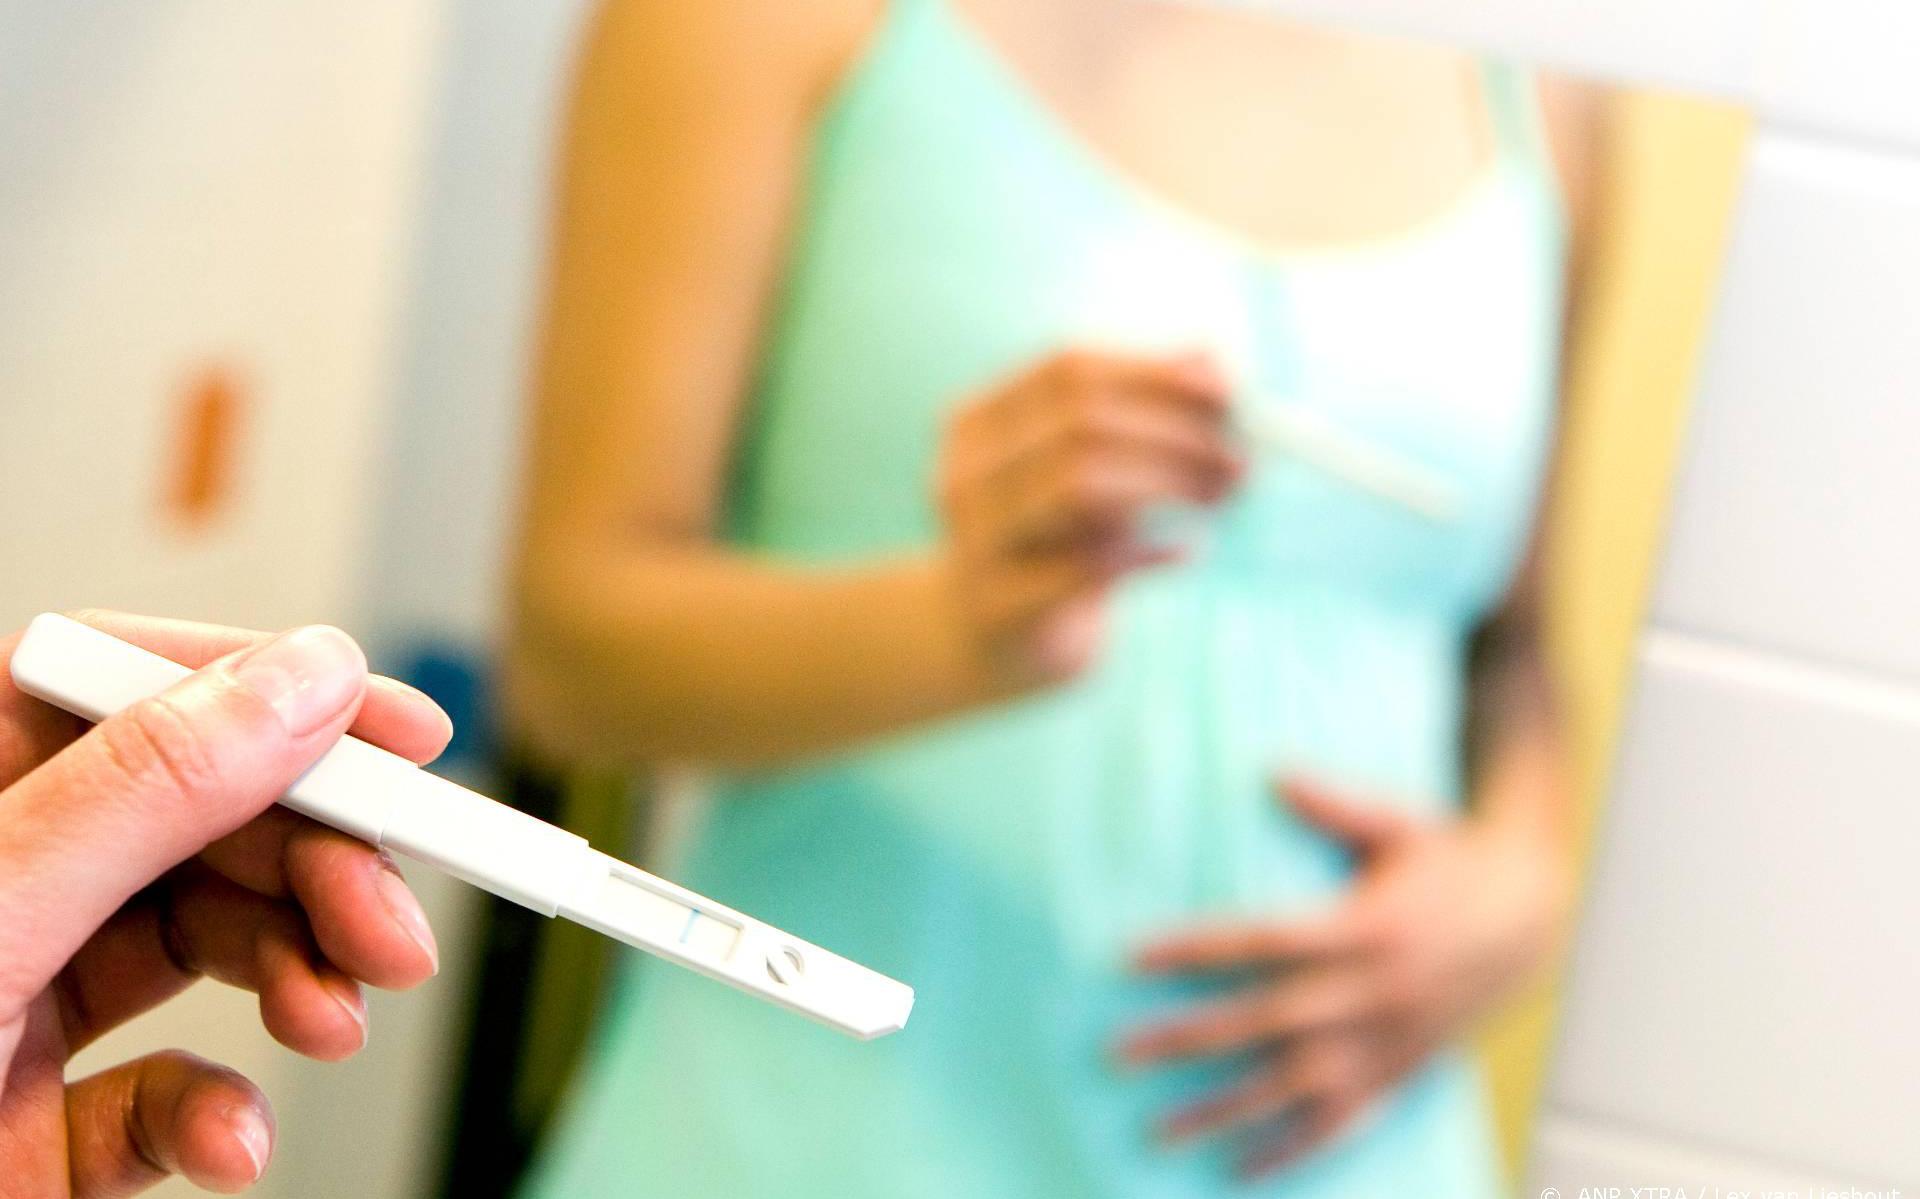 Vanaf volgend jaar komt de GGD op huisbezoek bij zwangeren in een kwetsbare situatie, als zij daar mee instemmen. 